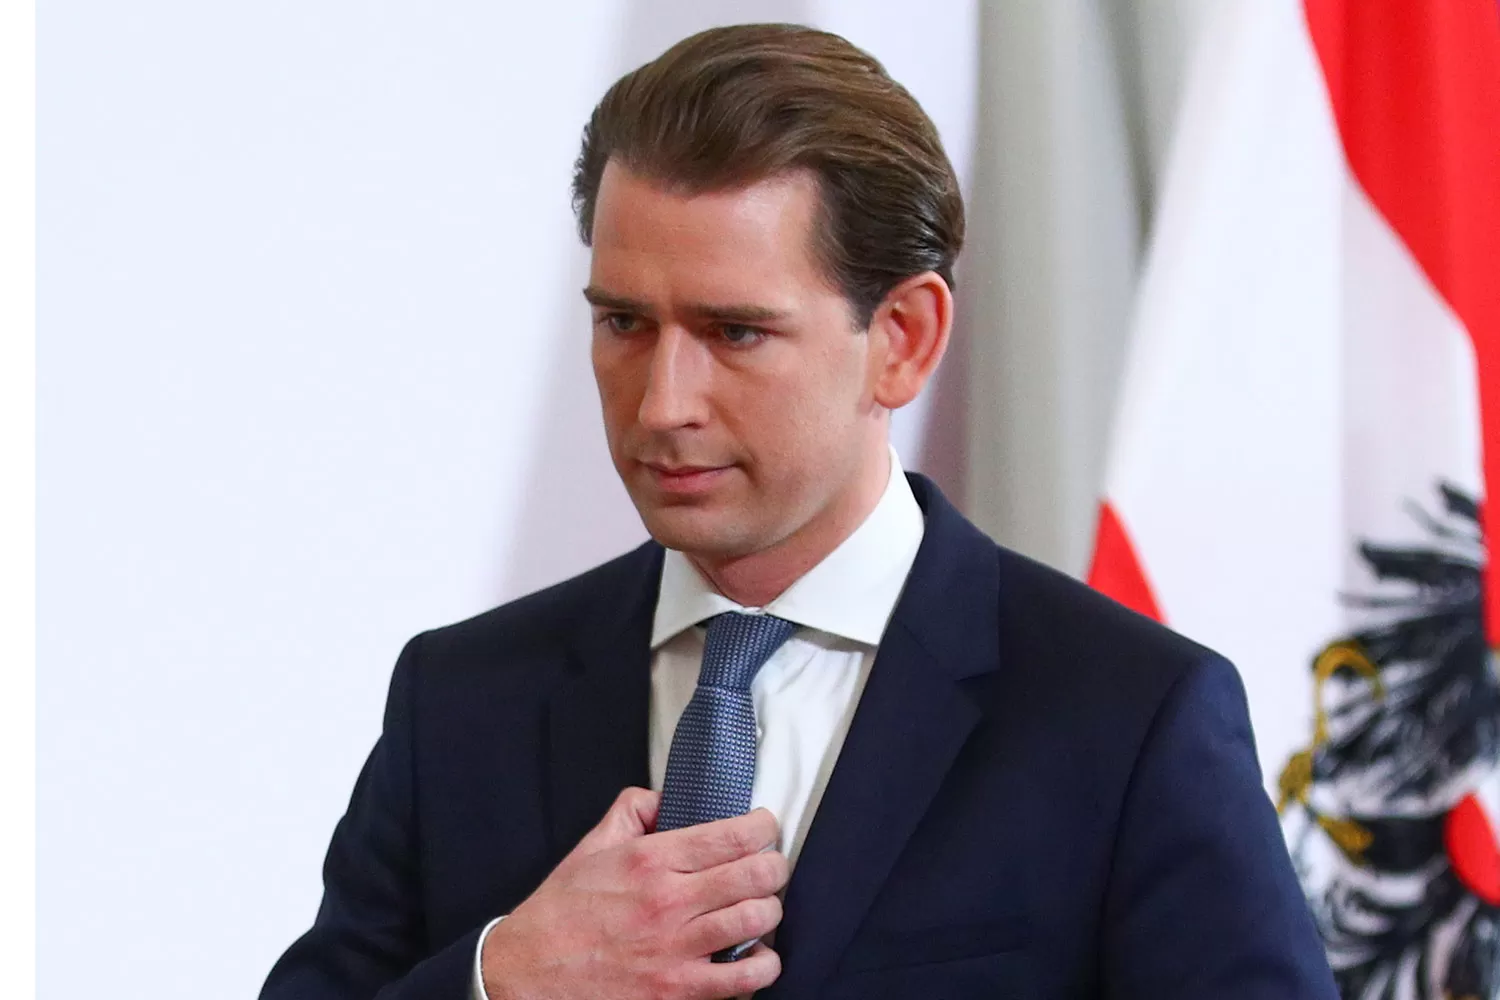 Renuncia en Austria: el canciller está siendo investigado